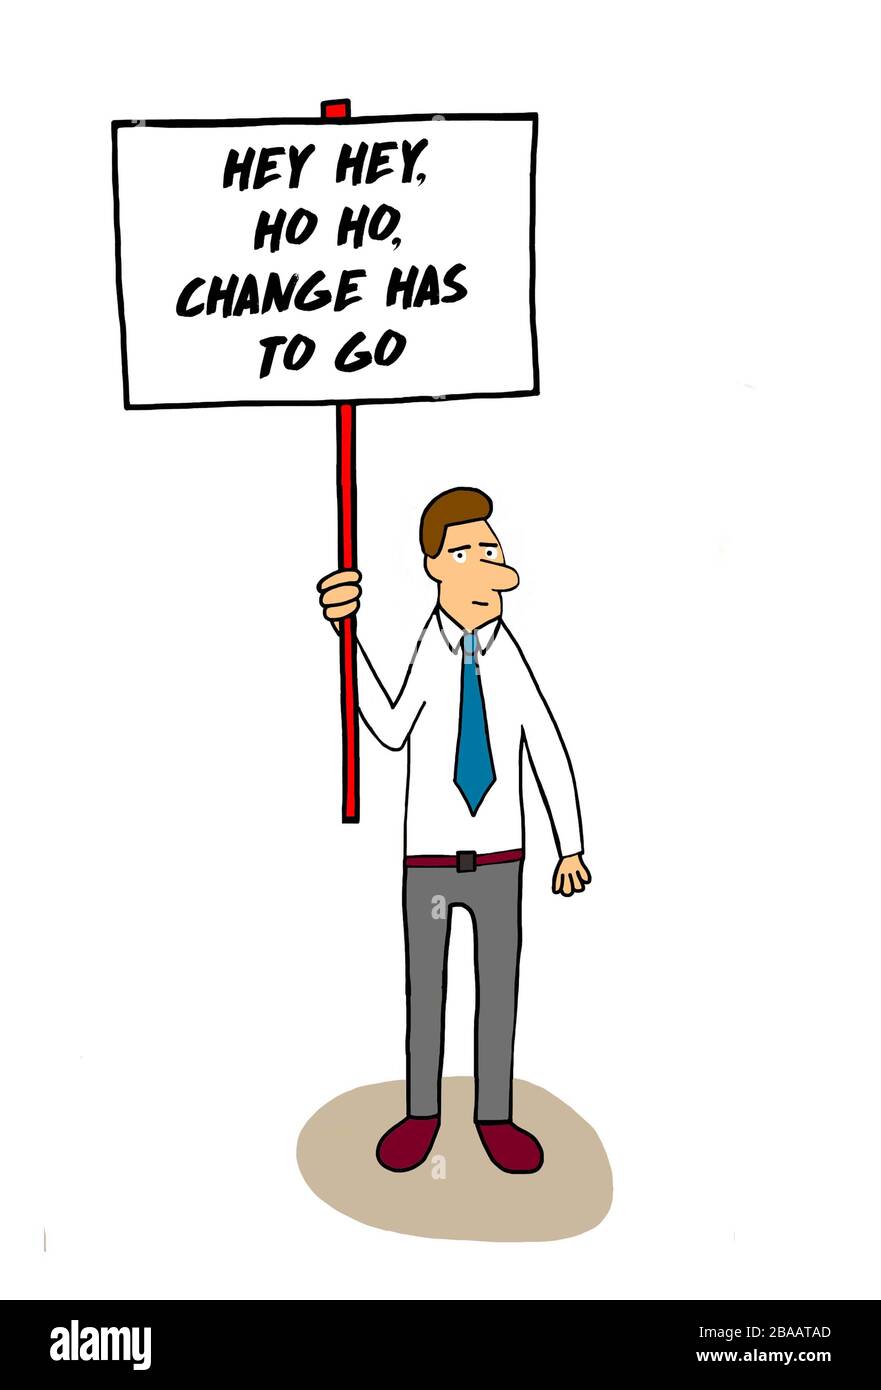 Ein Farbencartoon, der einen Geschäftsmann zeigt, der ein Zeichen hält, das besagt, dass er Änderungen nicht mag. Stockfoto